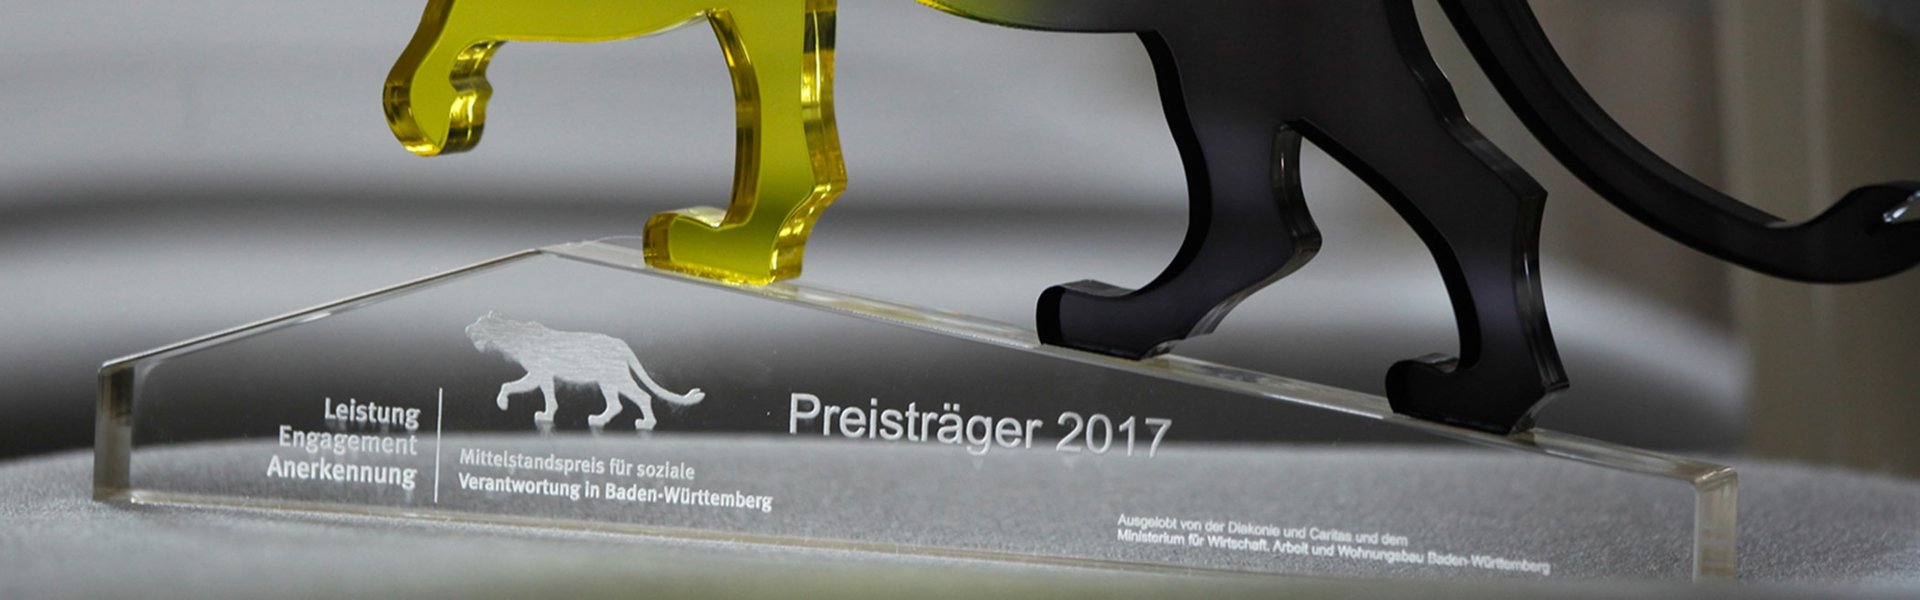 Erdgas Südwest ist Preisträger 2017 des LEA Mittelstandspreises für soziale Verantwortung in Baden-Württemberg.